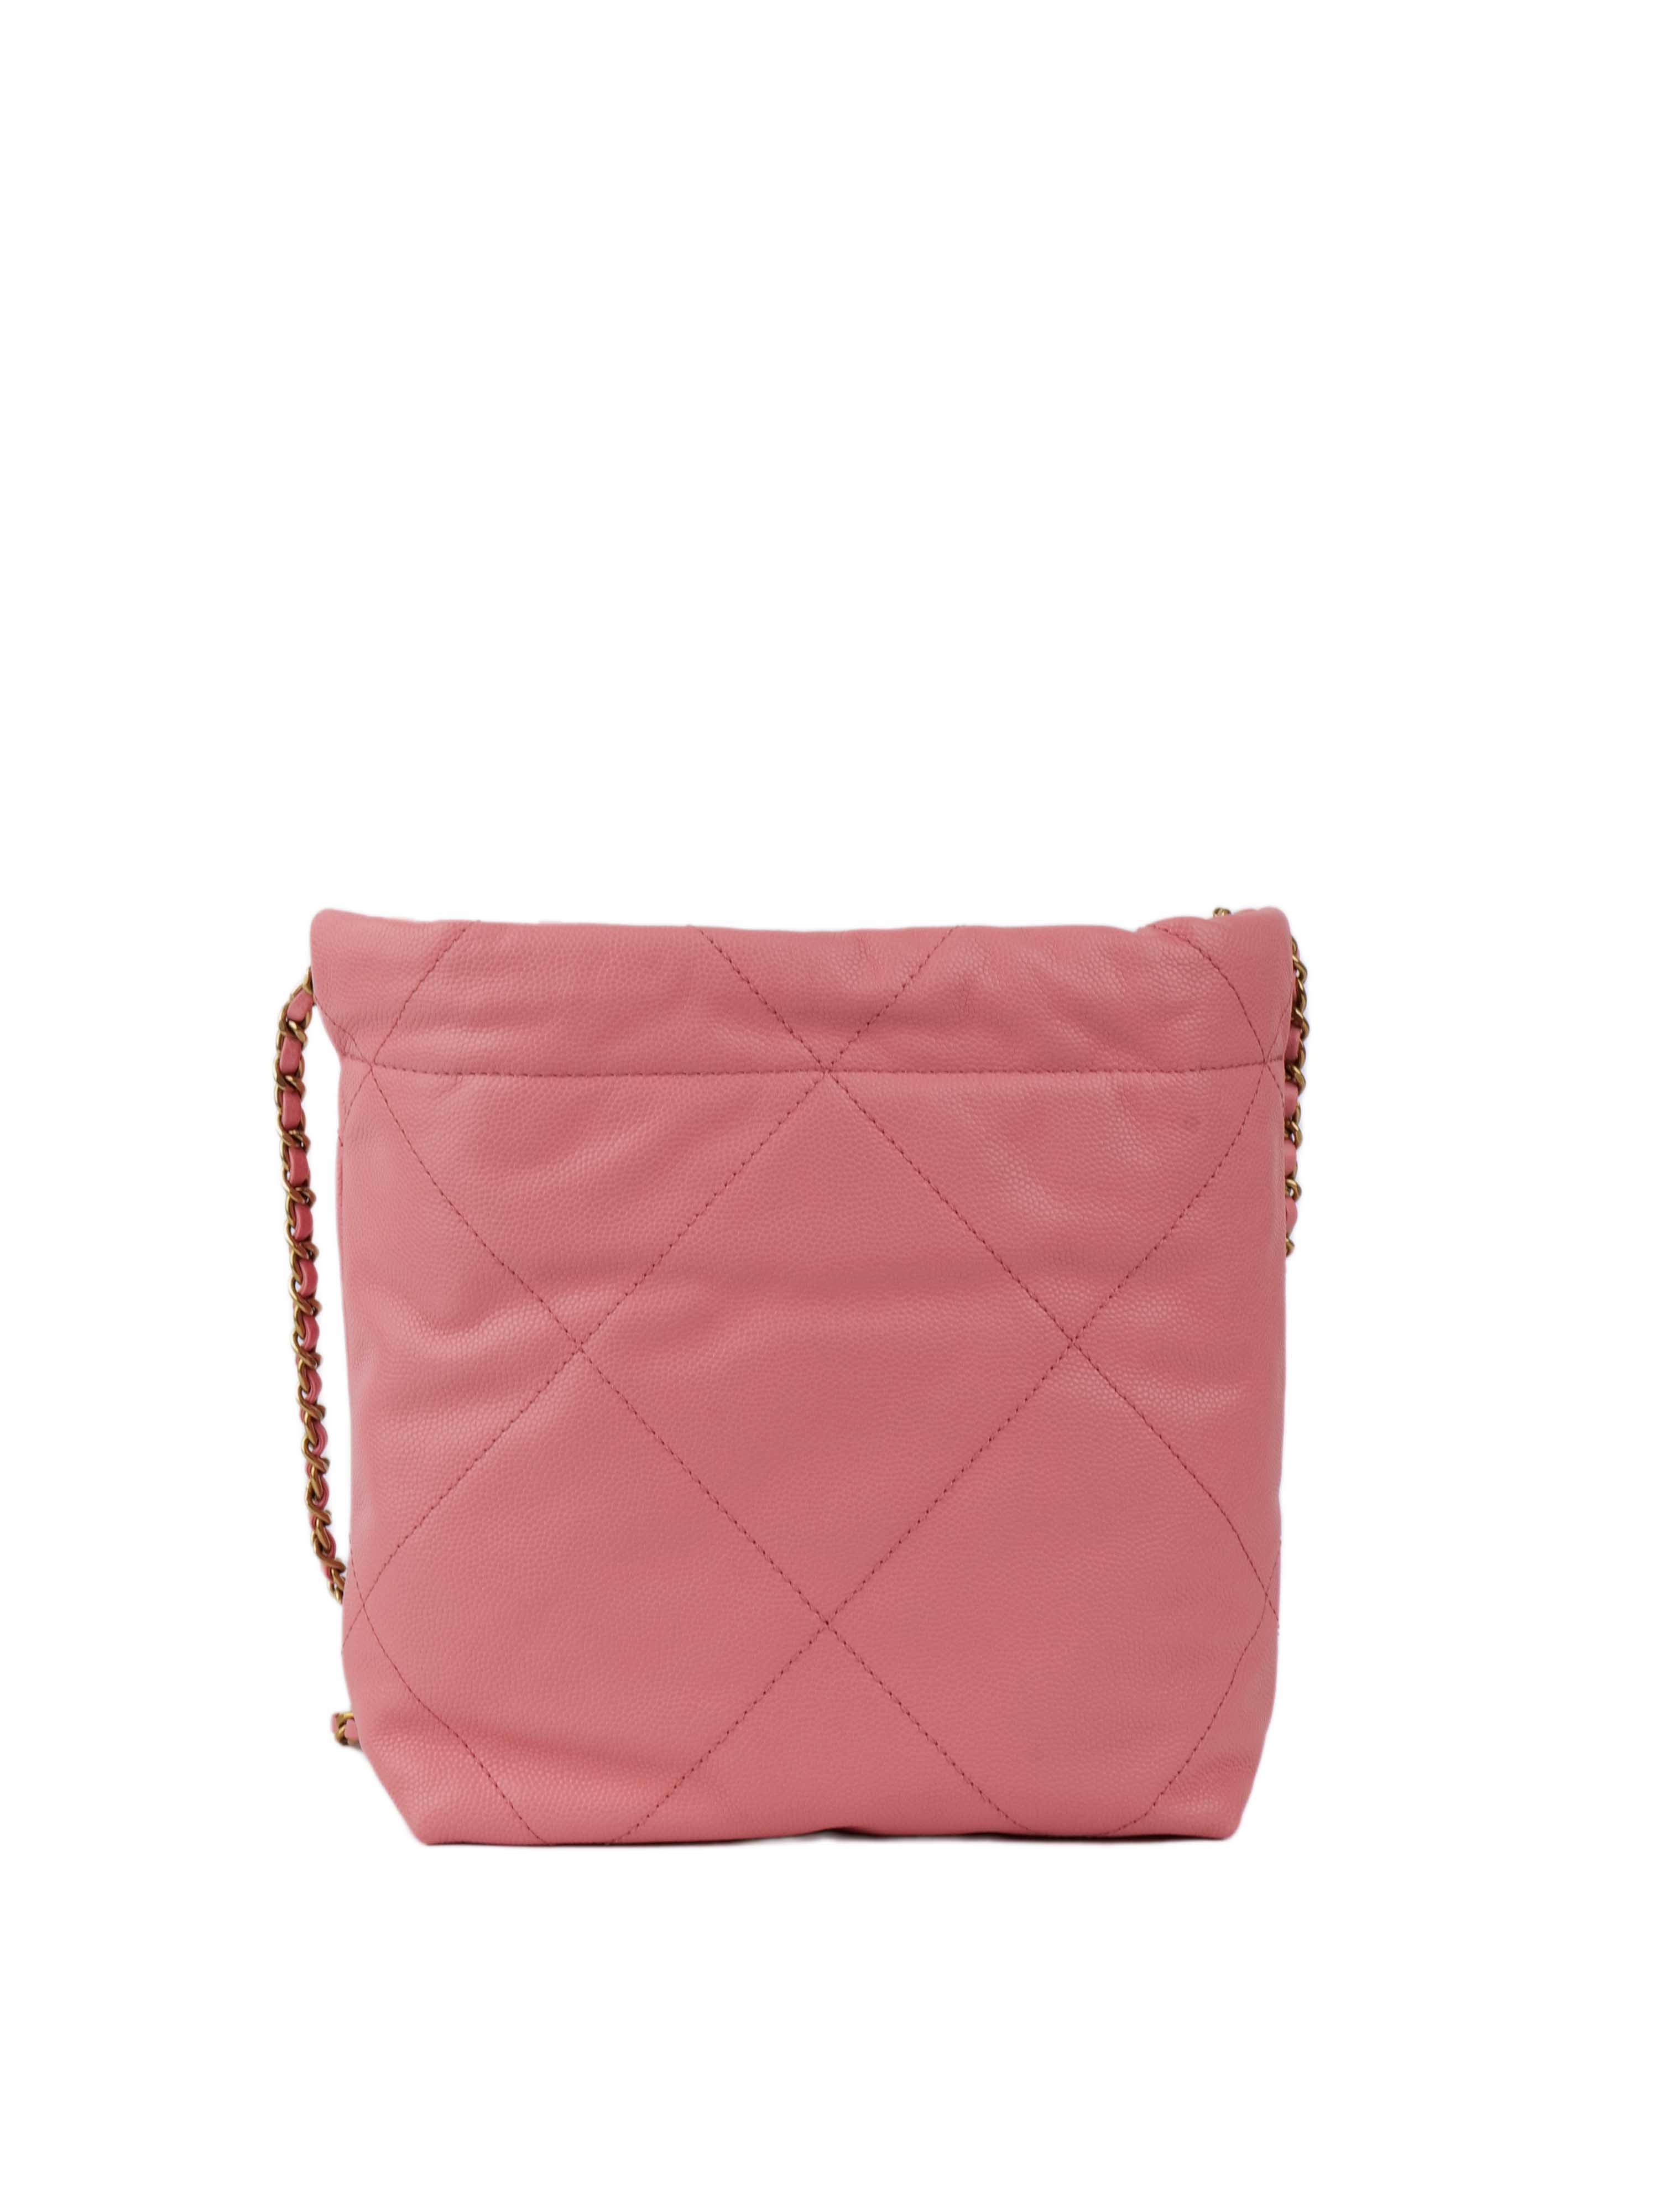 Chanel 22 Pink Mini Shoulder Bag.